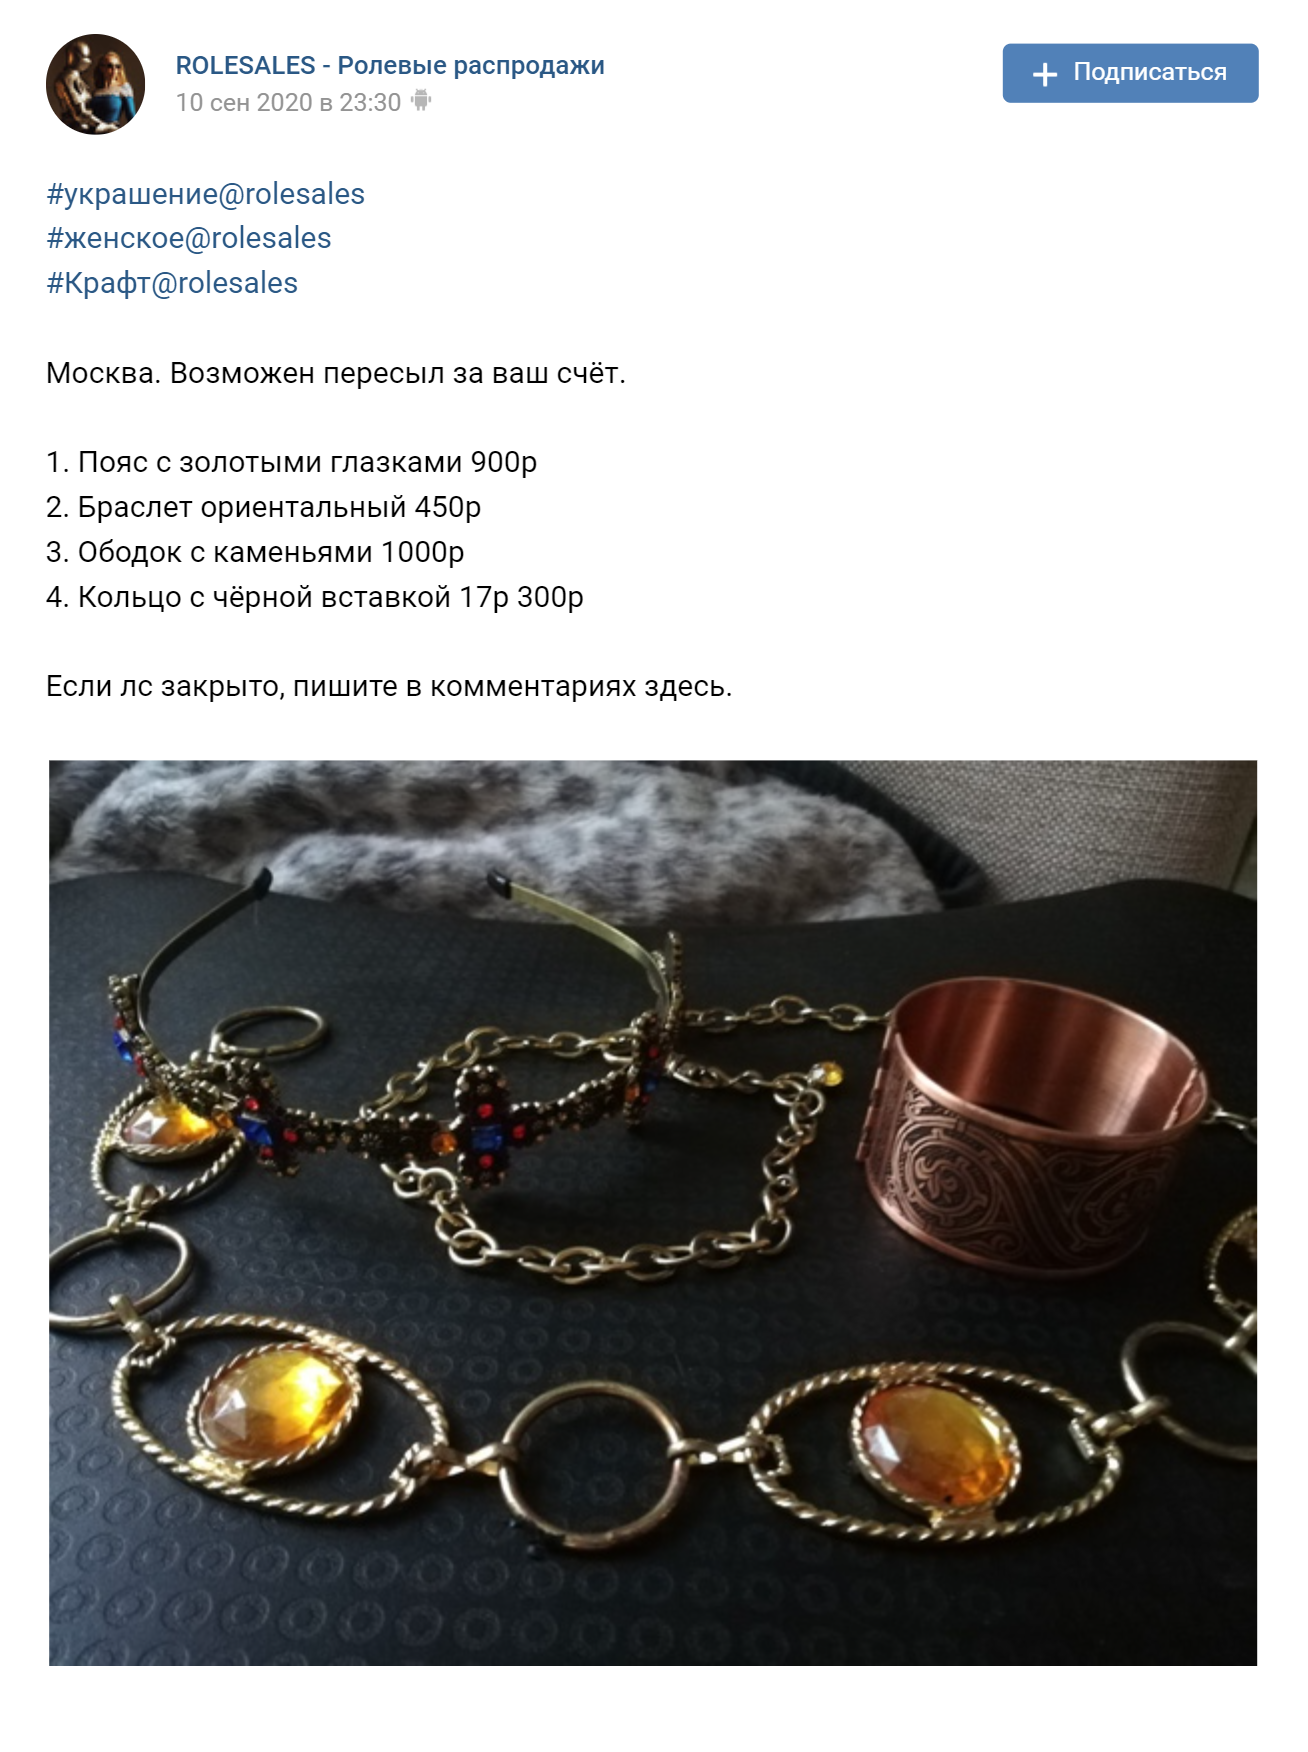 Вот такие кольца, ободки и колье продаются на барахолках в соцсетях. Источник: группа Rolesales